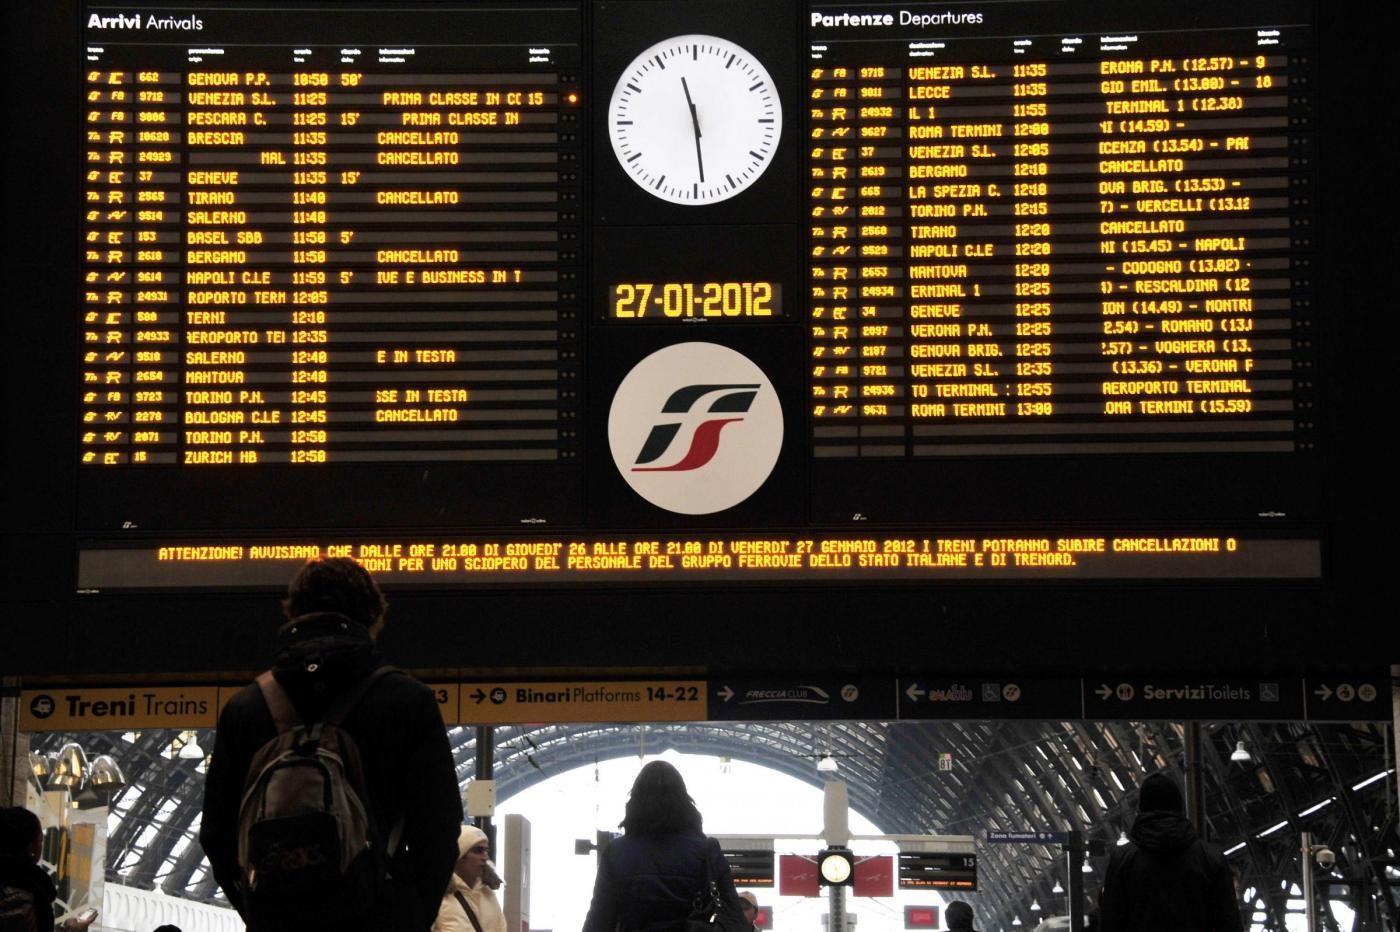 Sciopero treni giovedì 29 maggio orari e modalità (Trenitalia, RFI